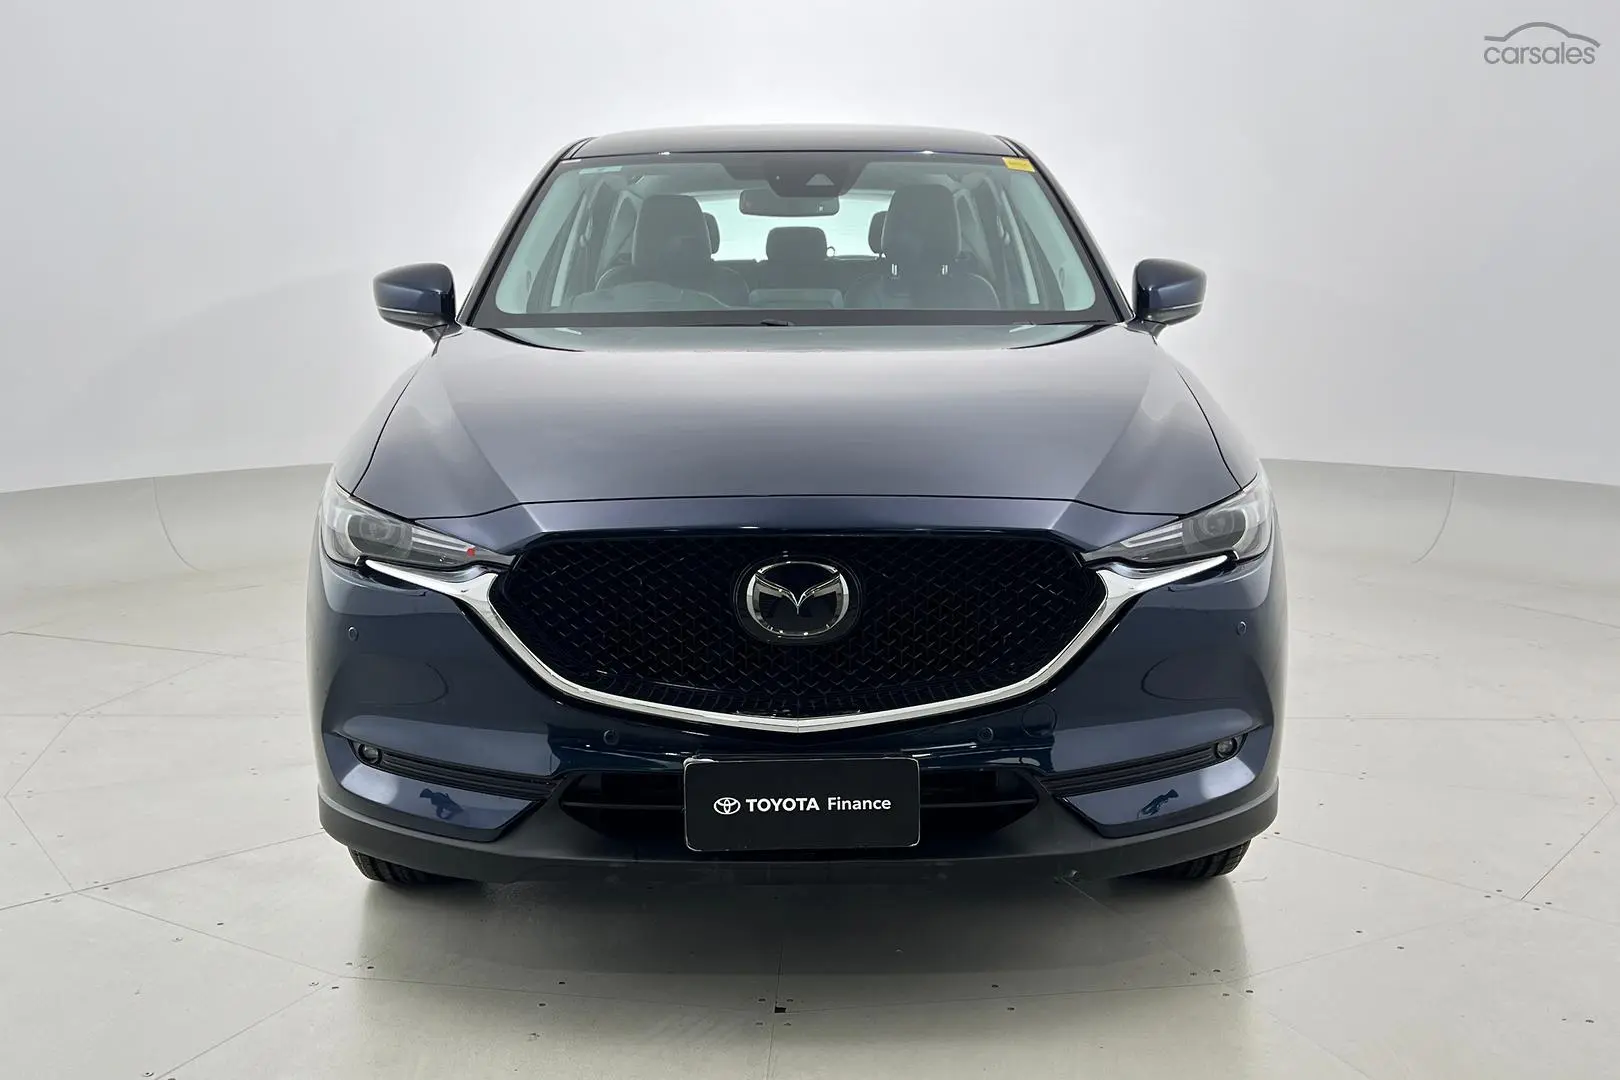 2019 Mazda CX-5 Image 10